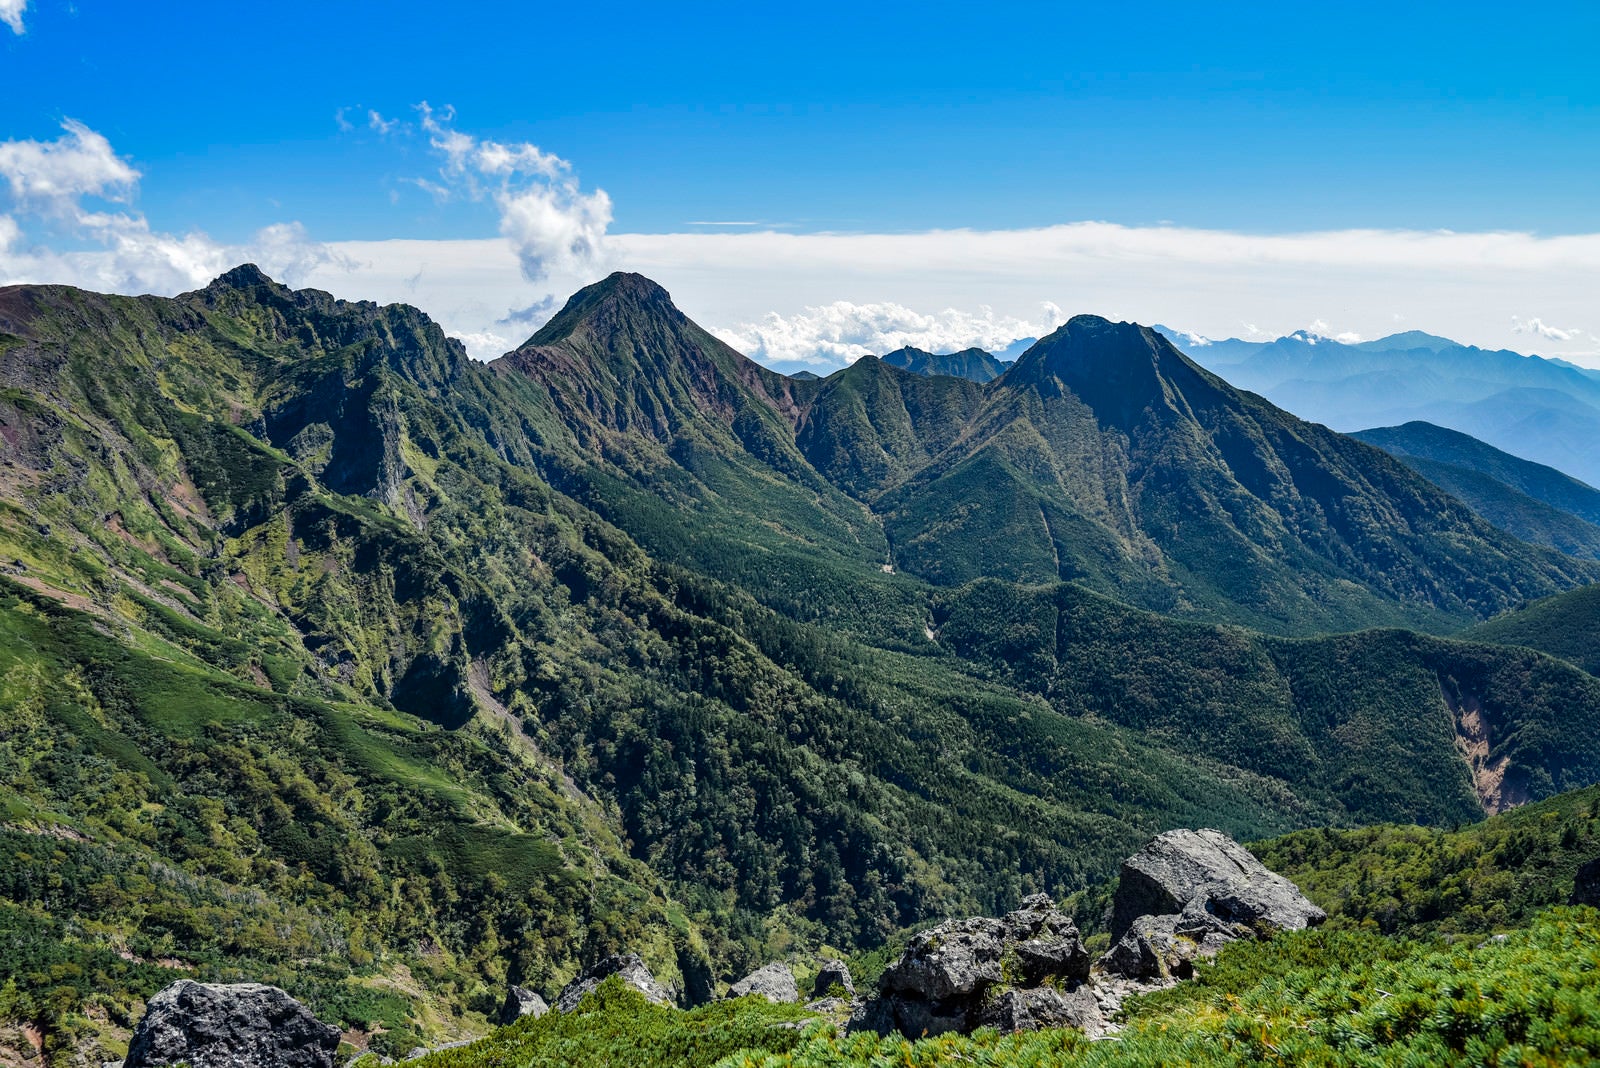 「硫黄岳赤岩の頭から見る八ヶ岳の展望」の写真